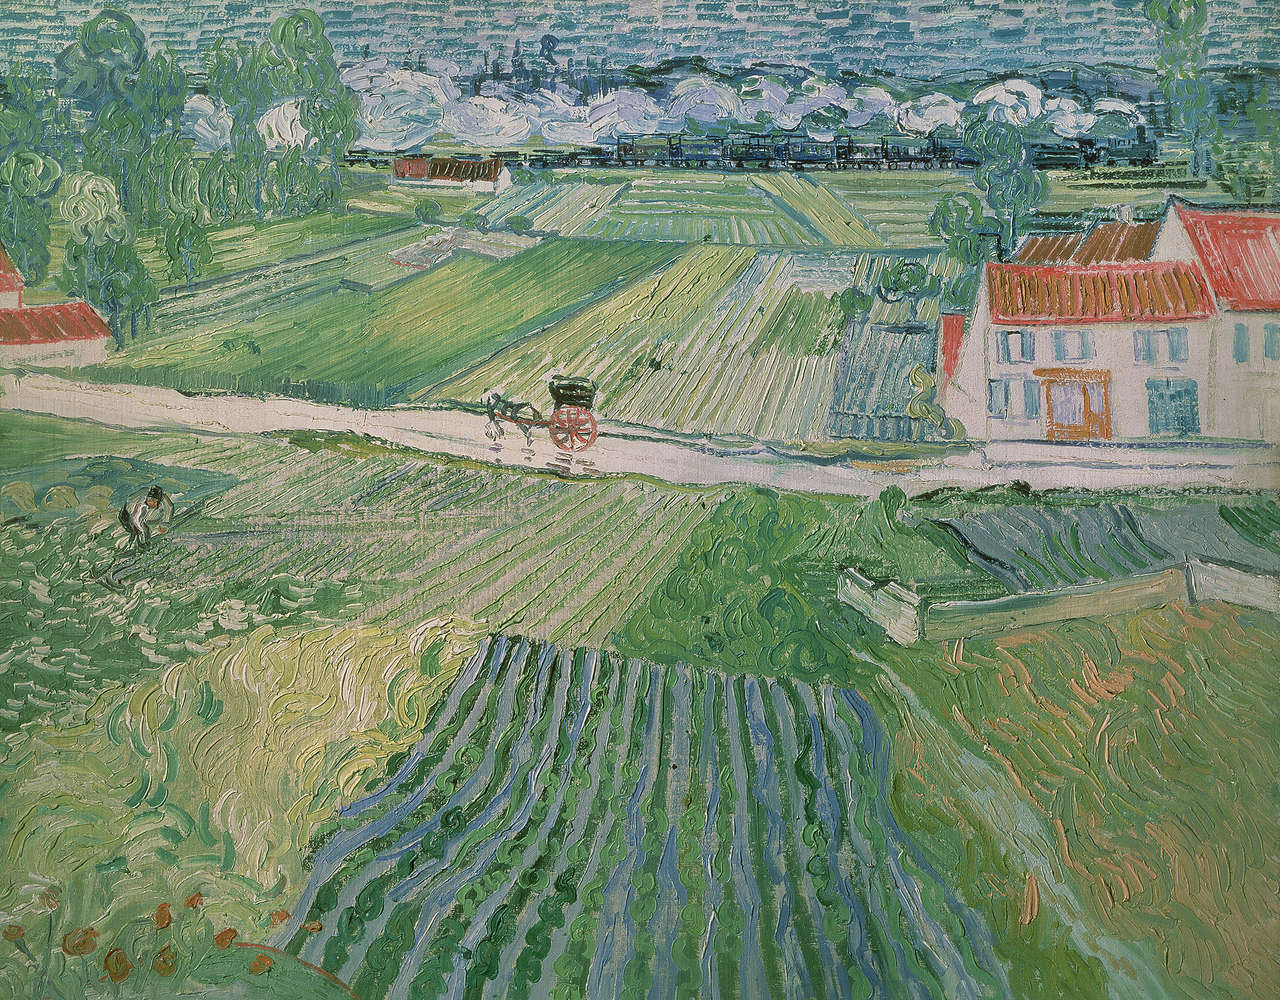             Fototapete "Landschaft bei Auvers nach dem Regen" von Vincent van Gogh
        